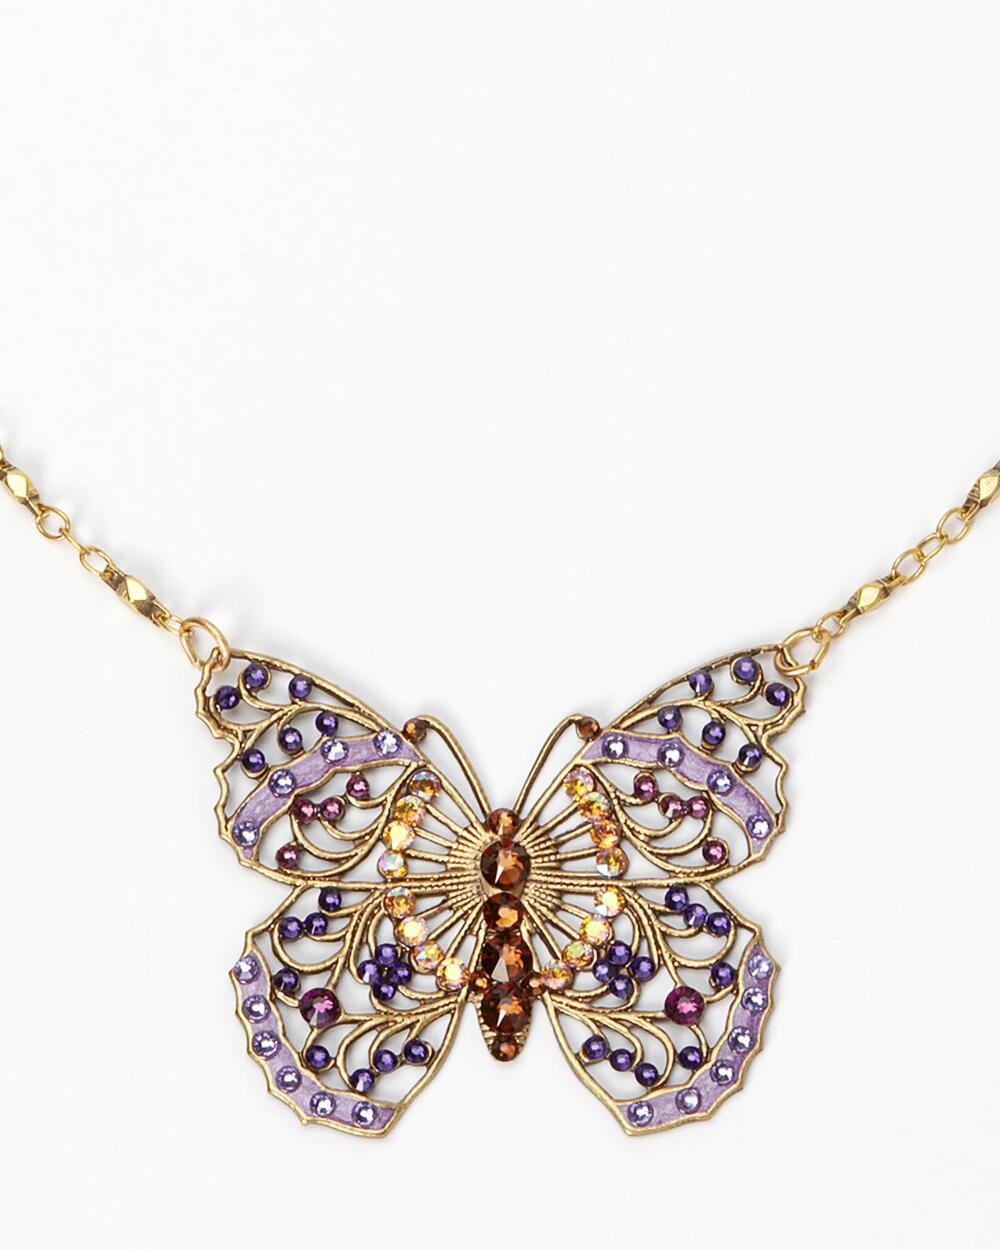 Smithsonian Filigree Butterfly Necklace by Anne Koplik FREE SHIPPING! - $64.99